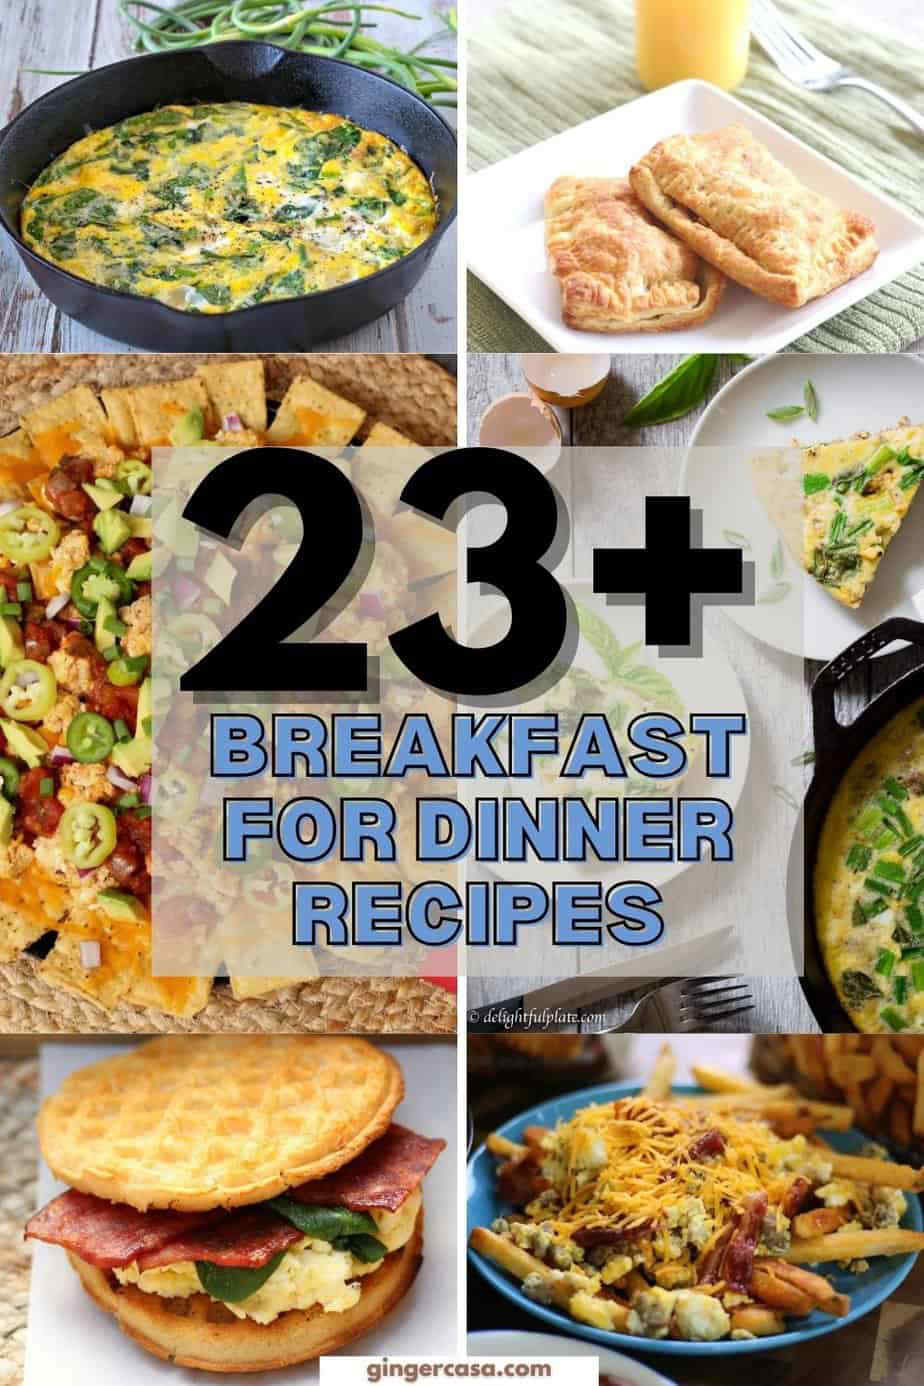 Enjoy These Favorite 23 Breakfast For Dinner Recipes